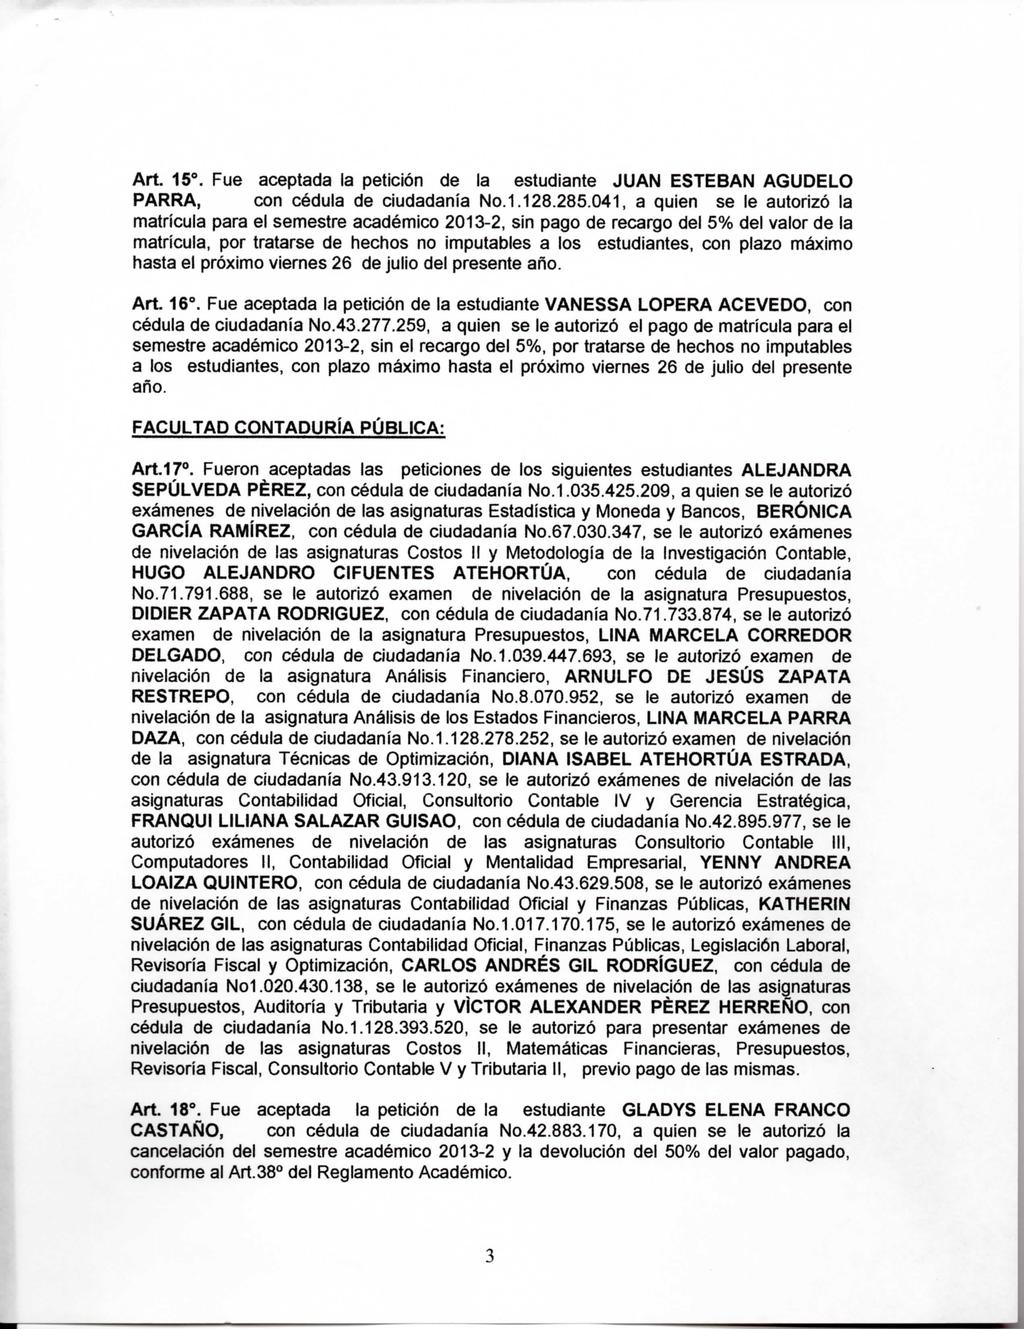 Art. 15. Fue aceptada la petición de la estudiante JUAN ESTEBAN AGUDELO PARRA, con cédula de ciudadanía No.1.128.285.